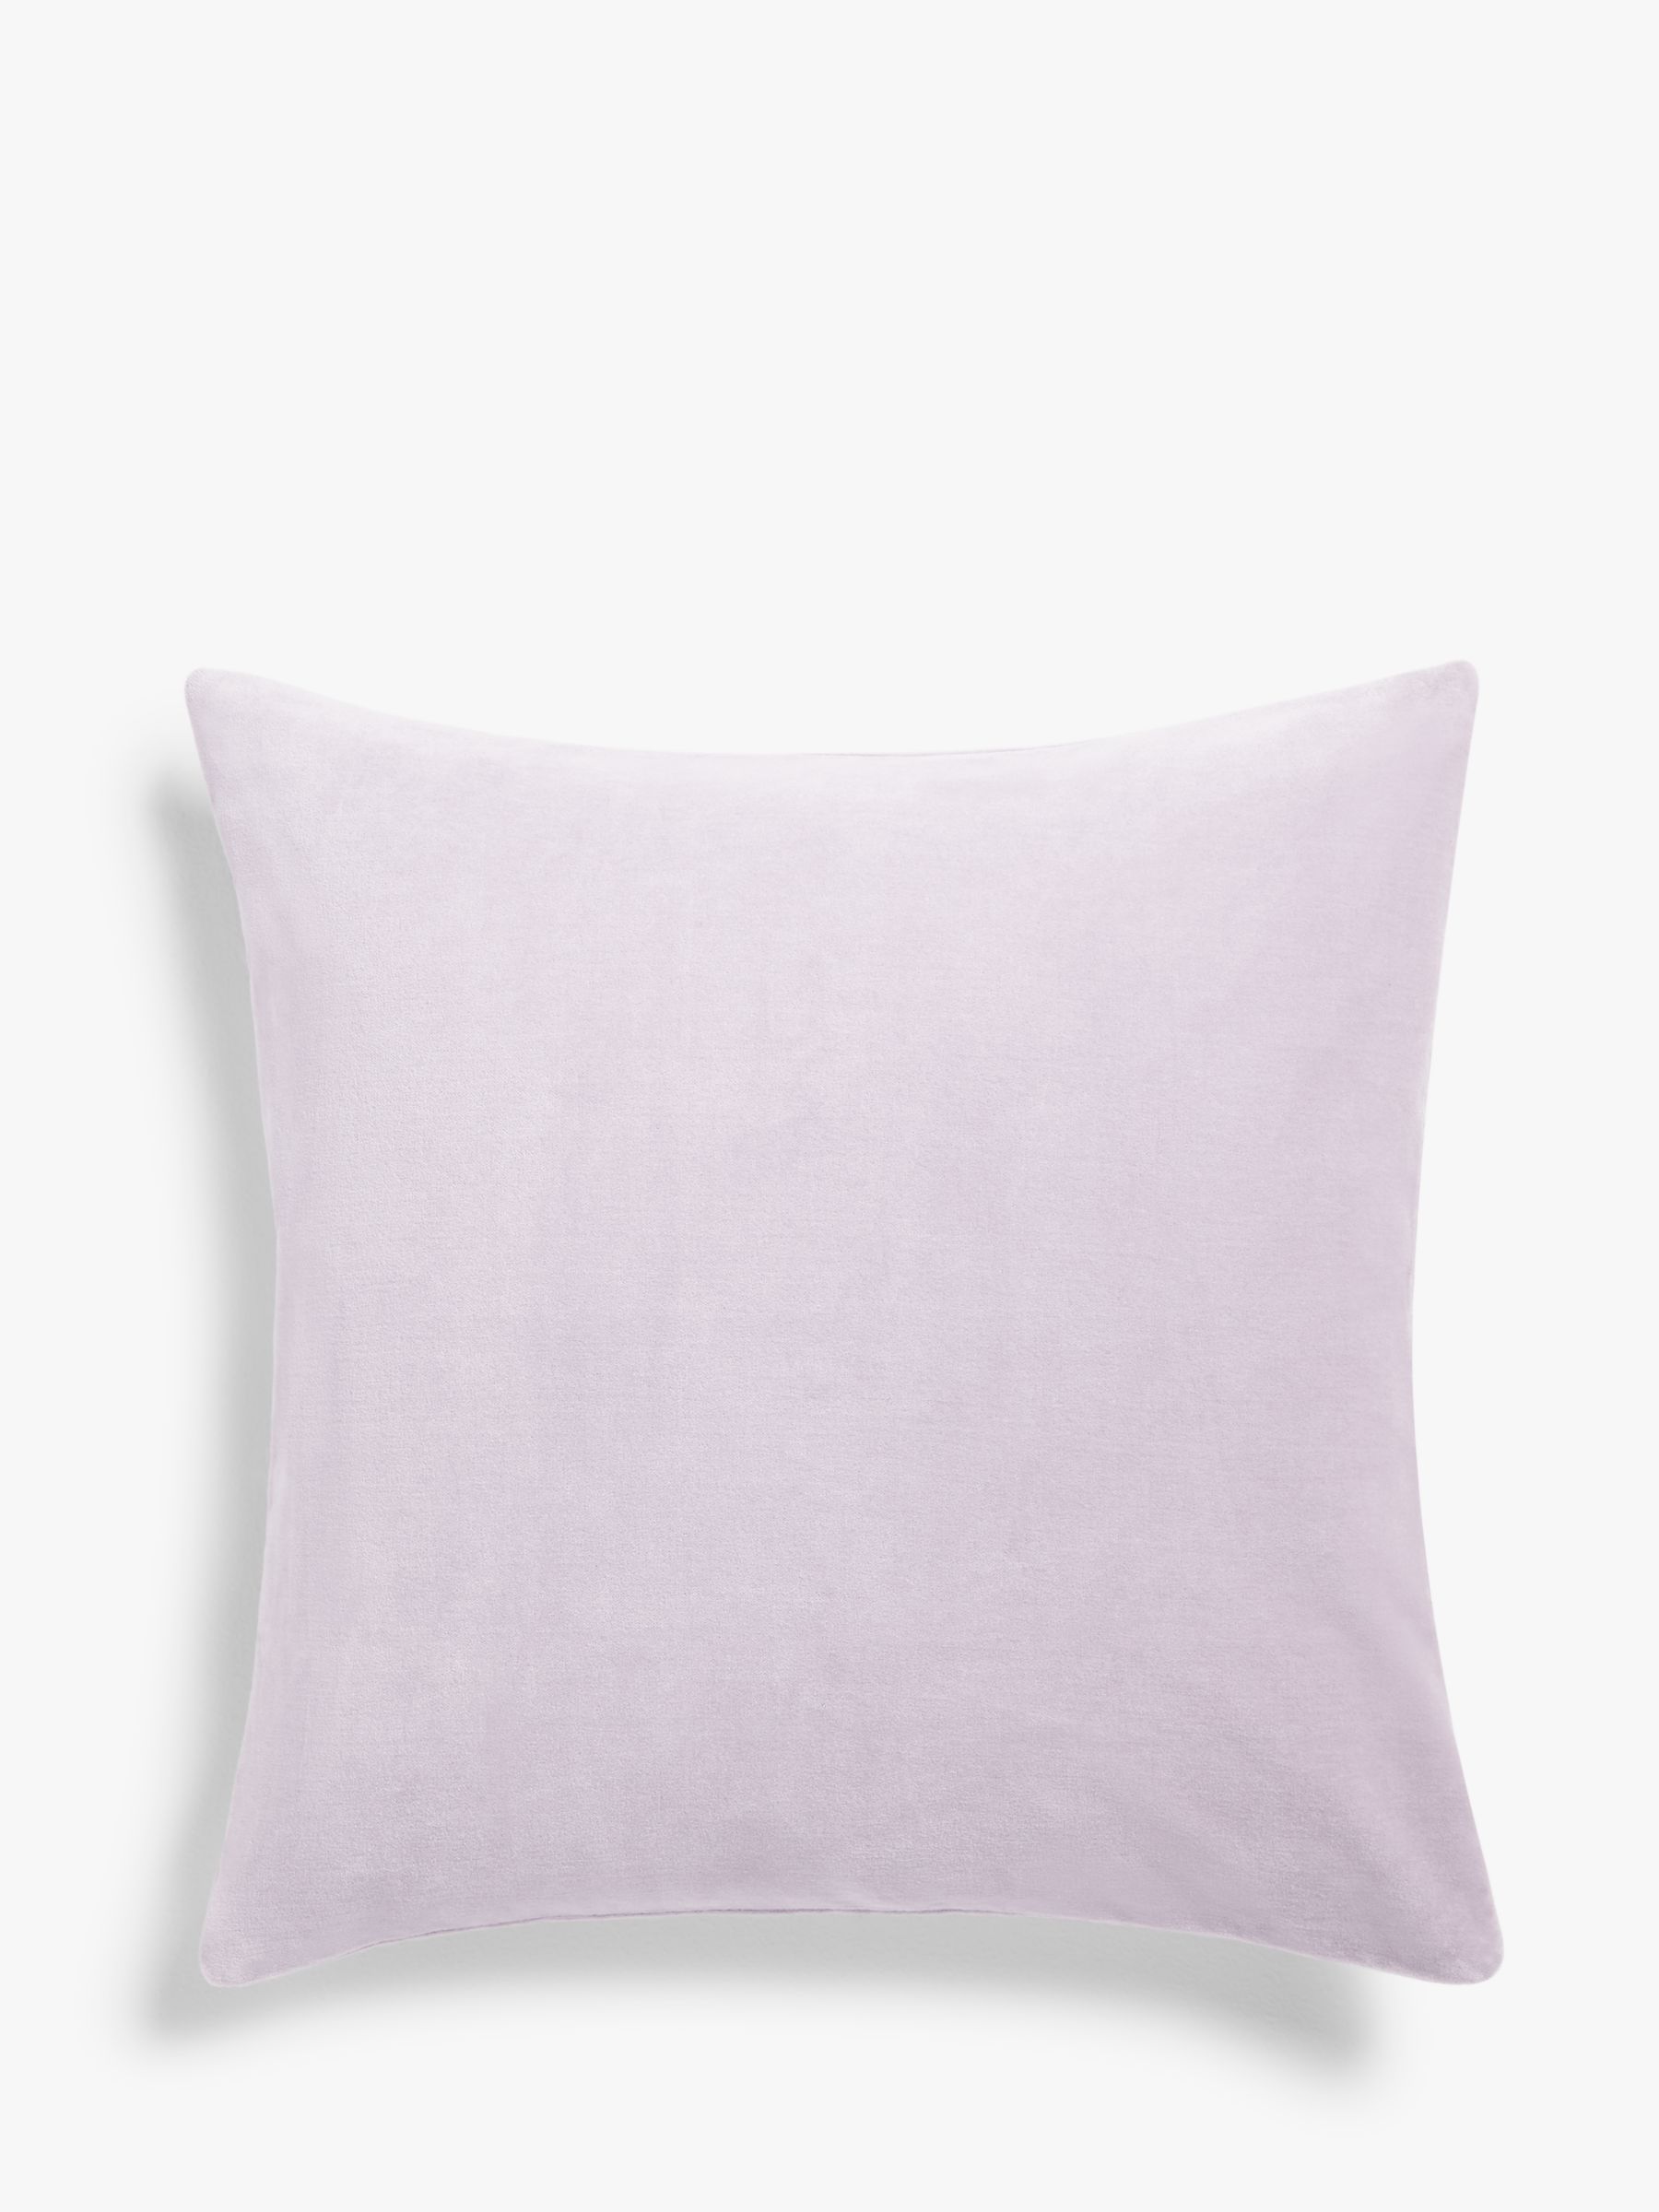 John Lewis & Partners Cotton Velvet Cushion, Crocus